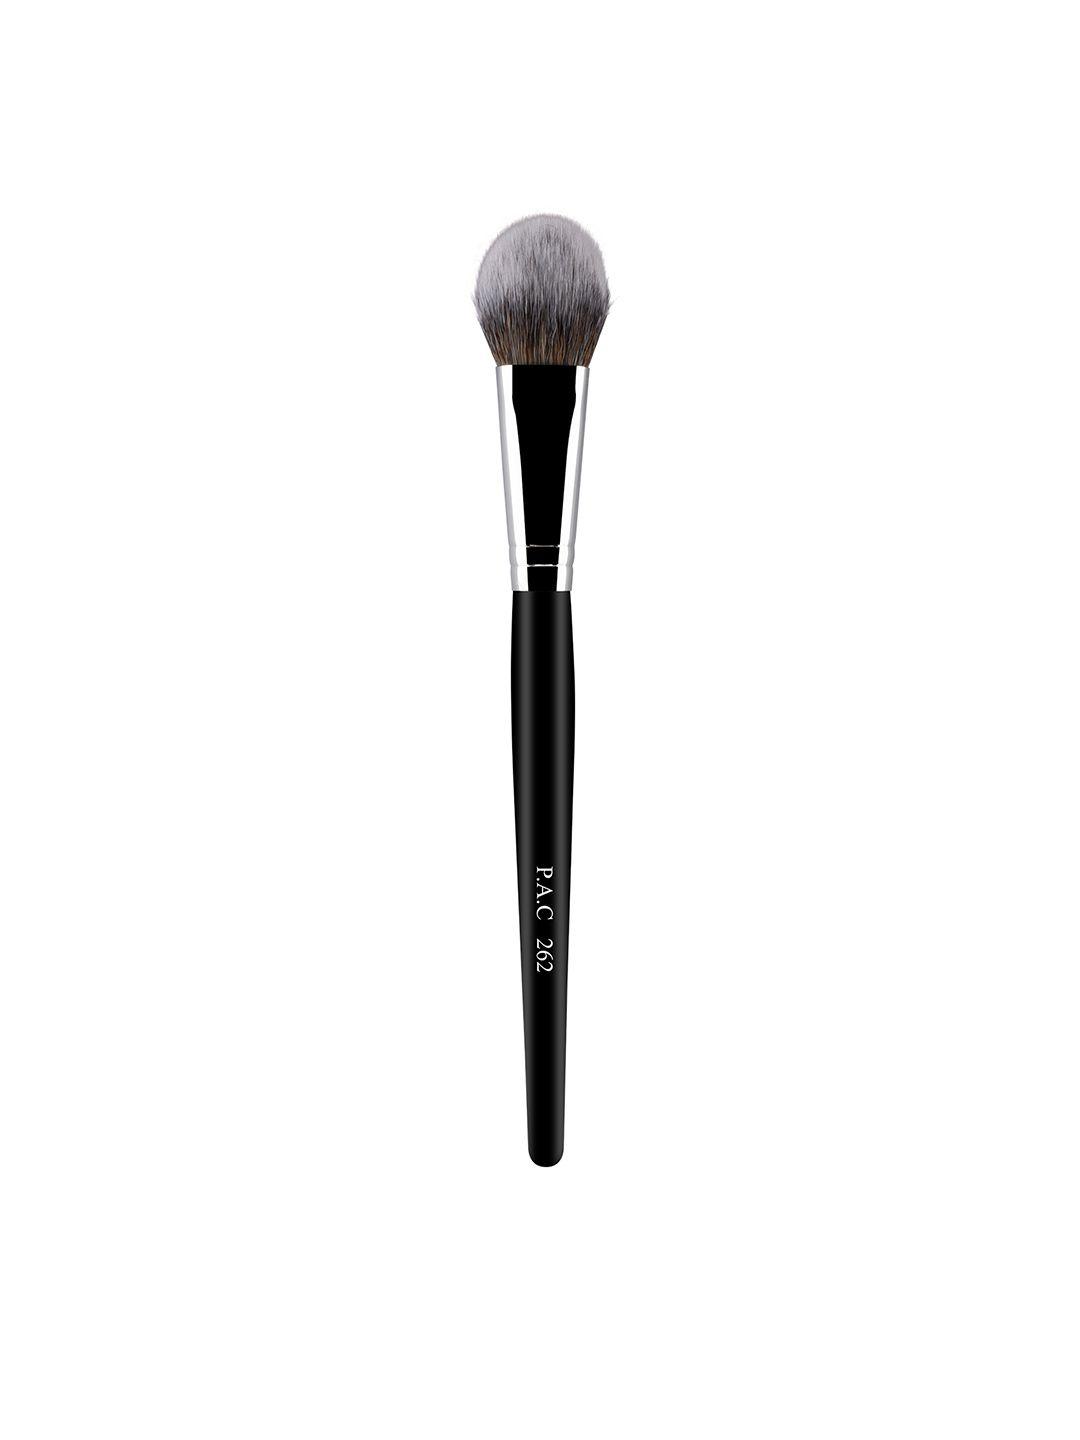 pac blush brush makeup brush - 262